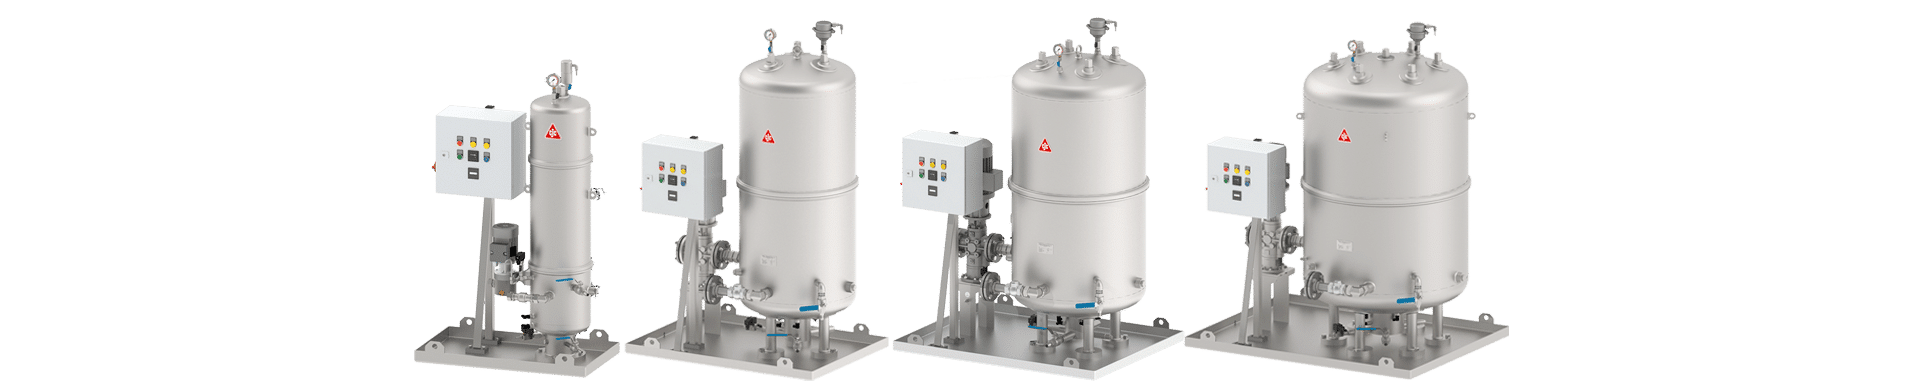 fluidpflegesystem für kraftstoffreinigung und tankpflege